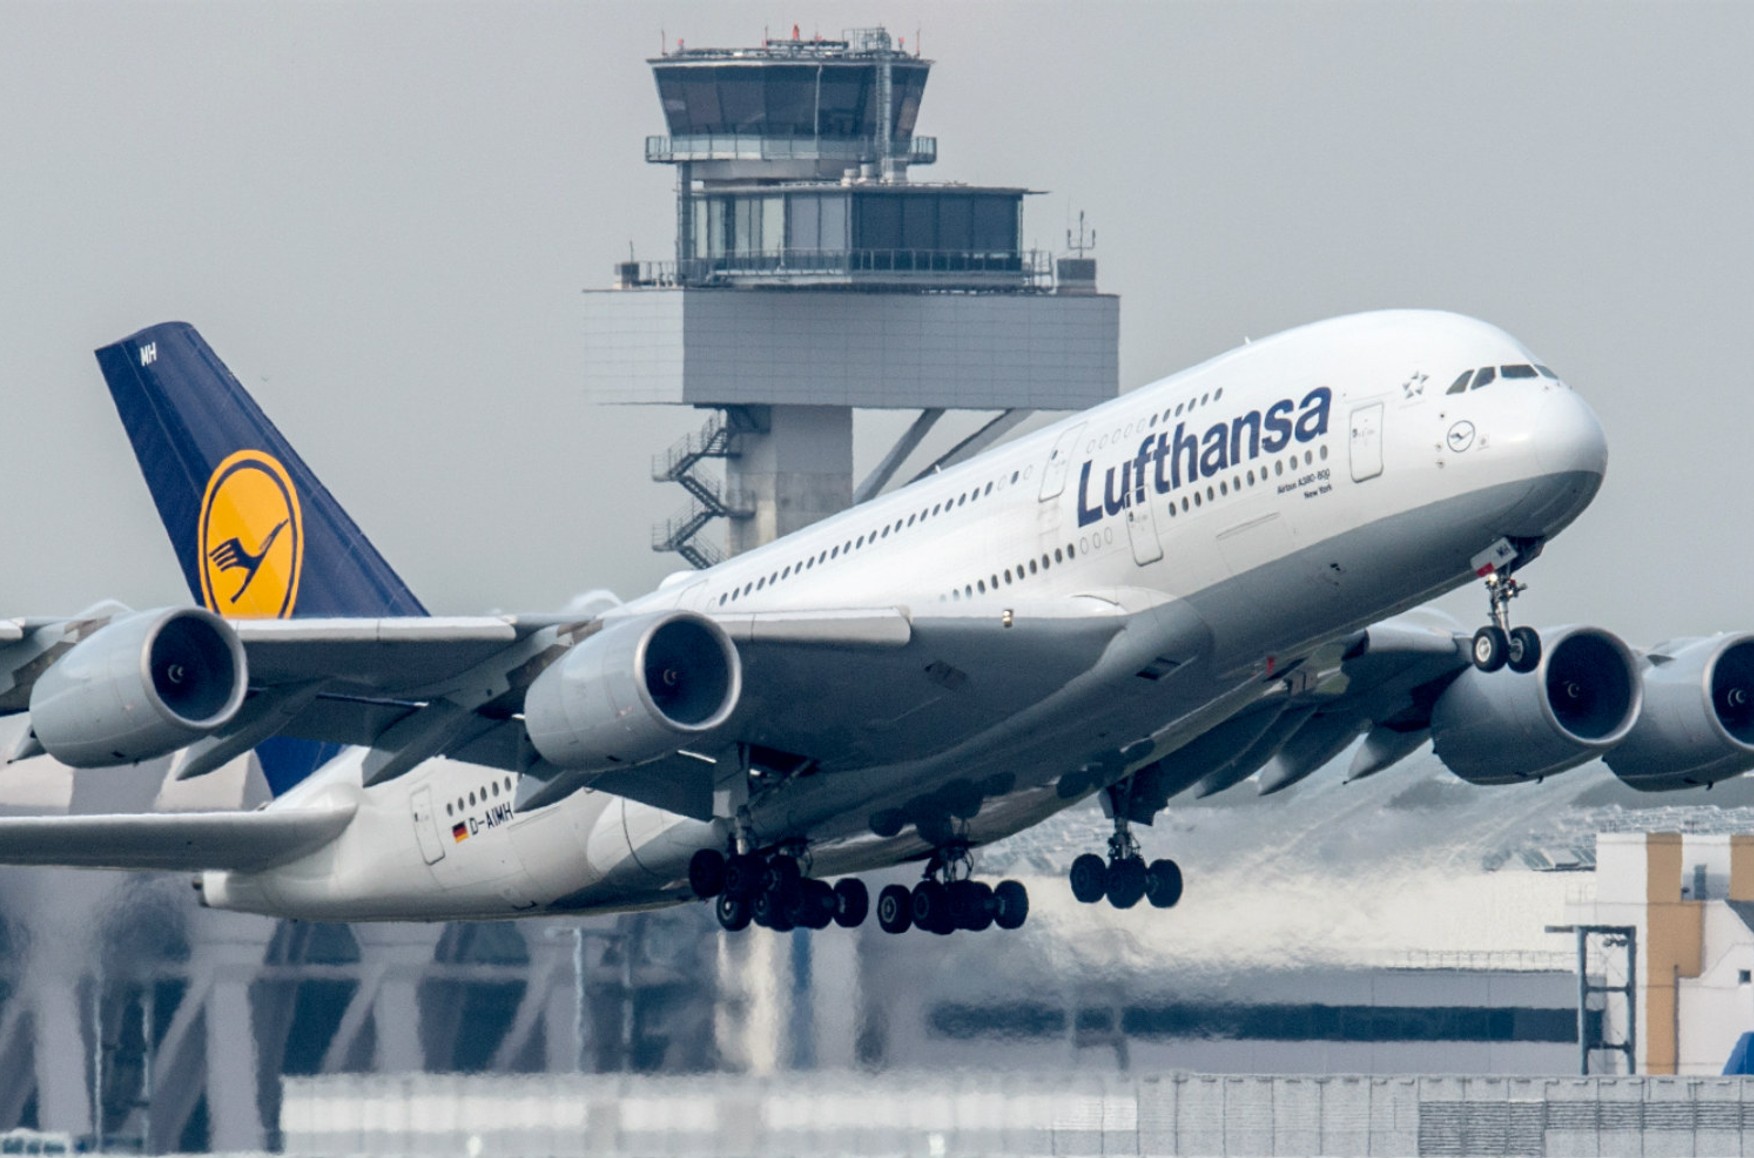 У Мінську затримали виліт літака Lufthansa до Франкфурта. Очевидці повідомляють, що пасажирів відправили на повторний огляд